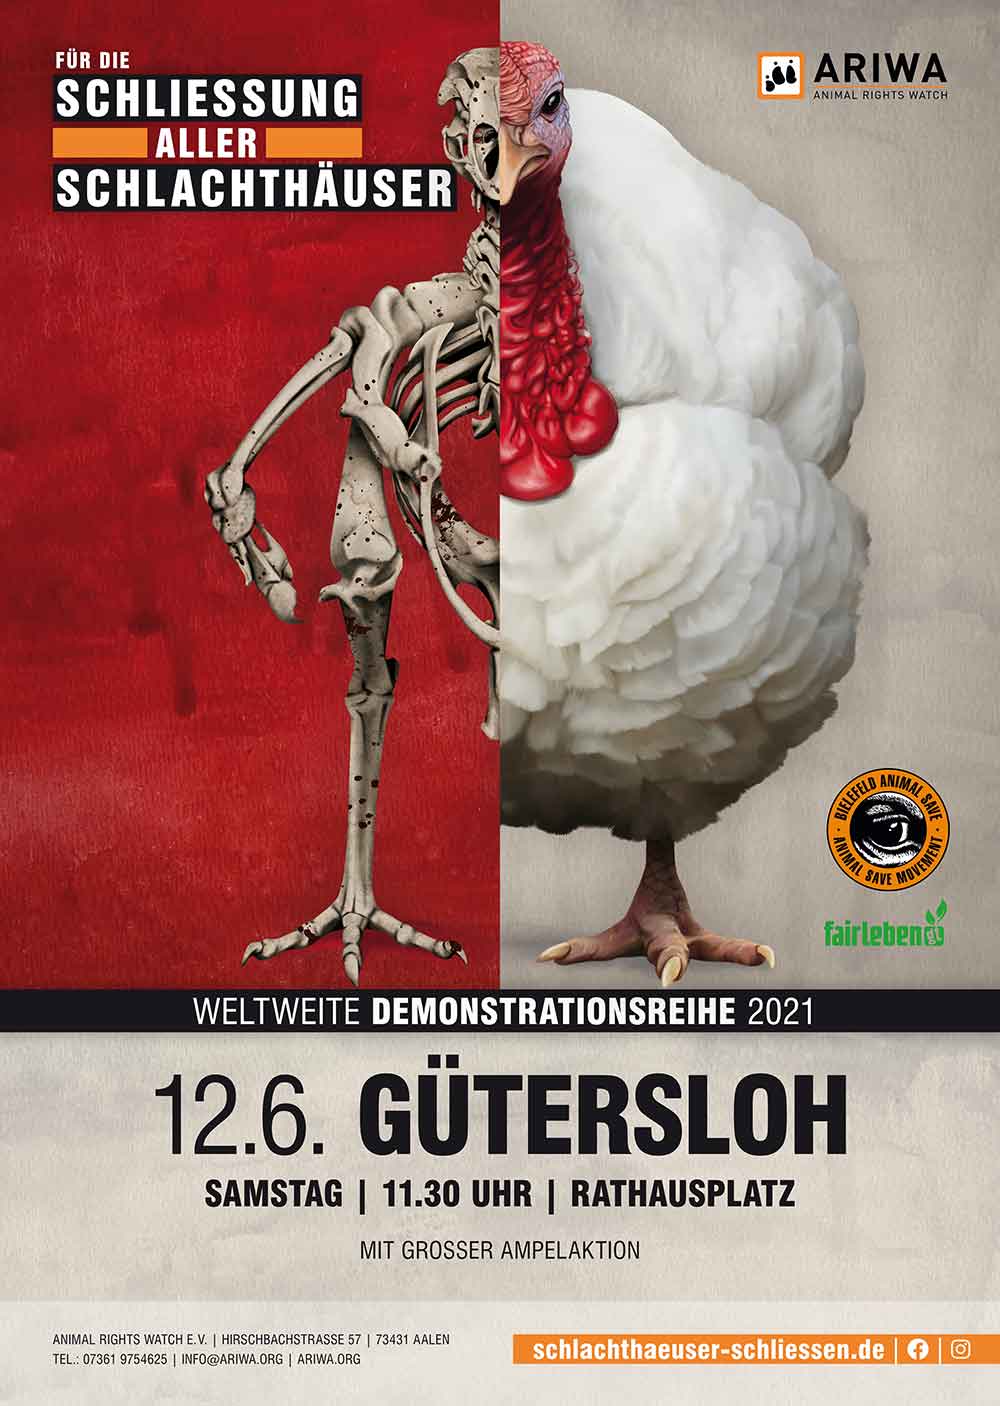 Der Verein »Fairleben GT« demonstriert am Samstag, 12. Juni 2021, in Gütersloh